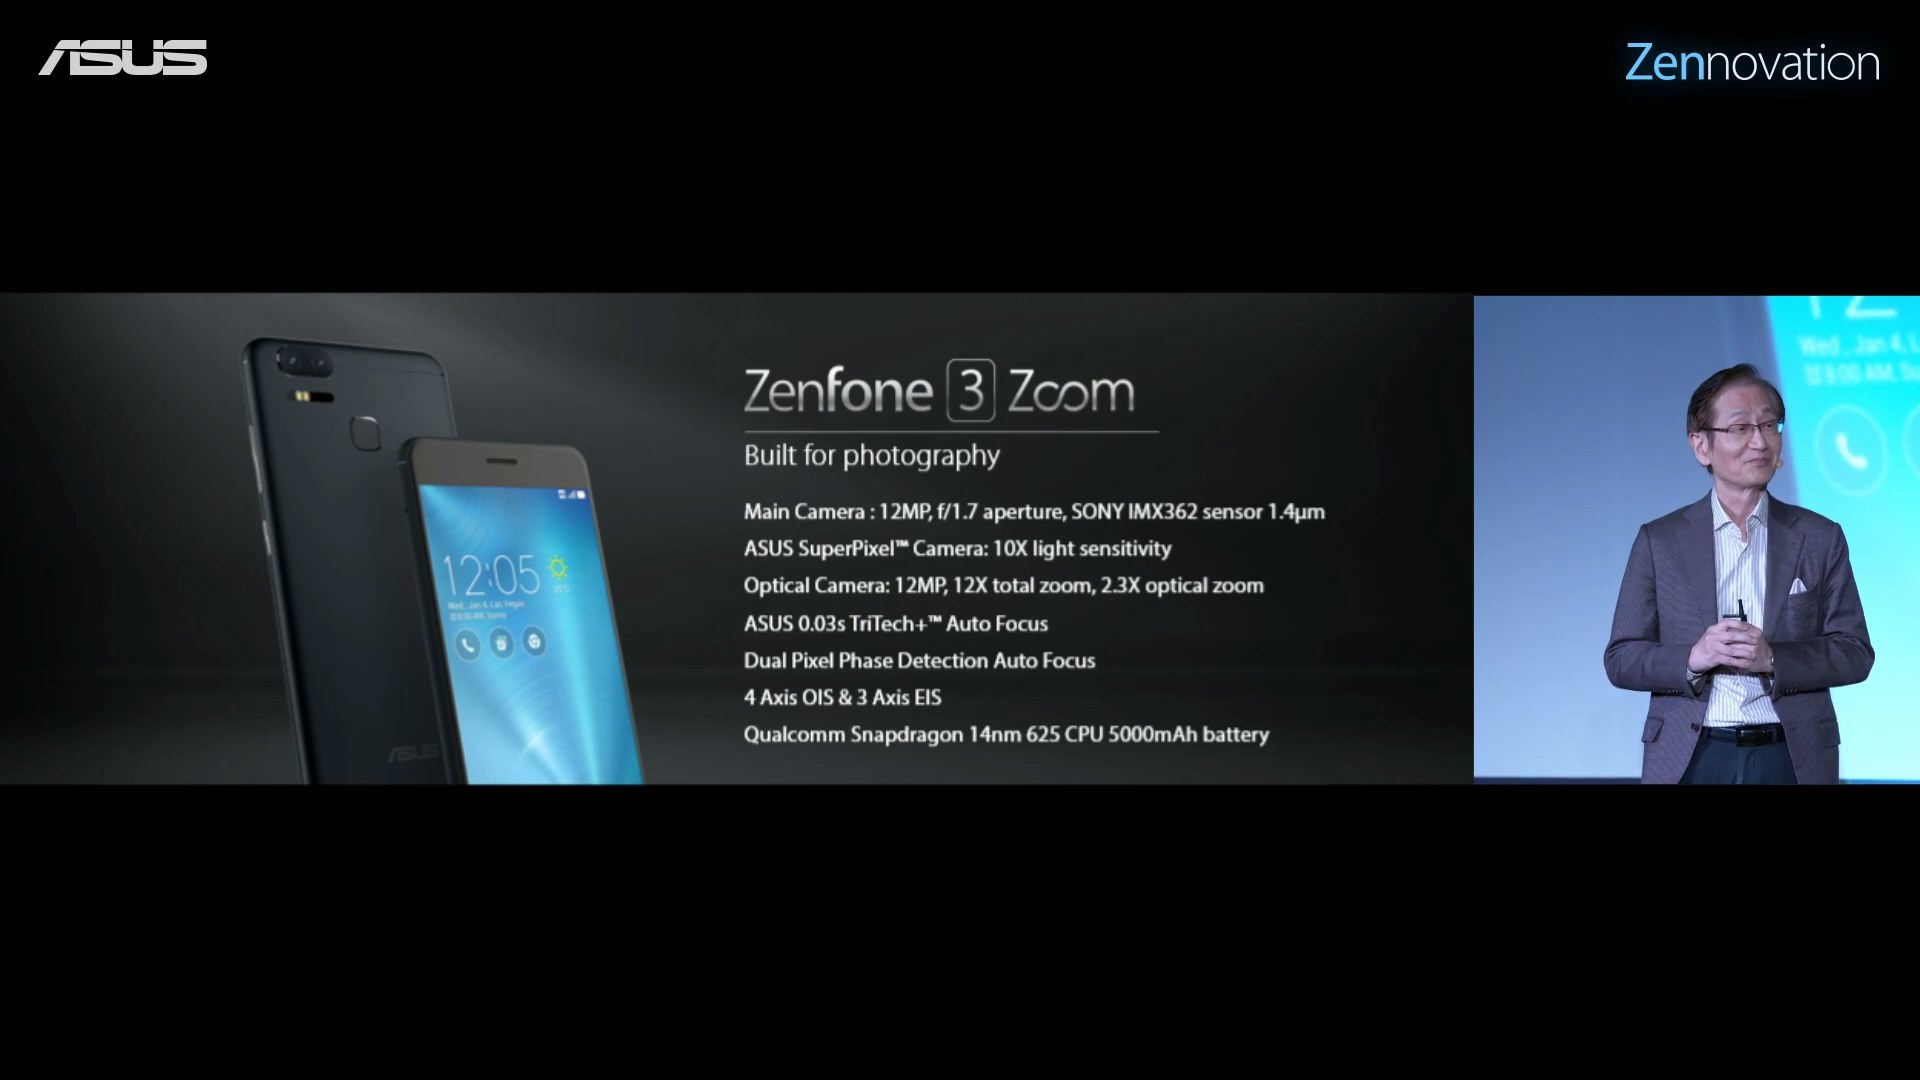 ASUS Zenfone 3 Zoom CES 2017